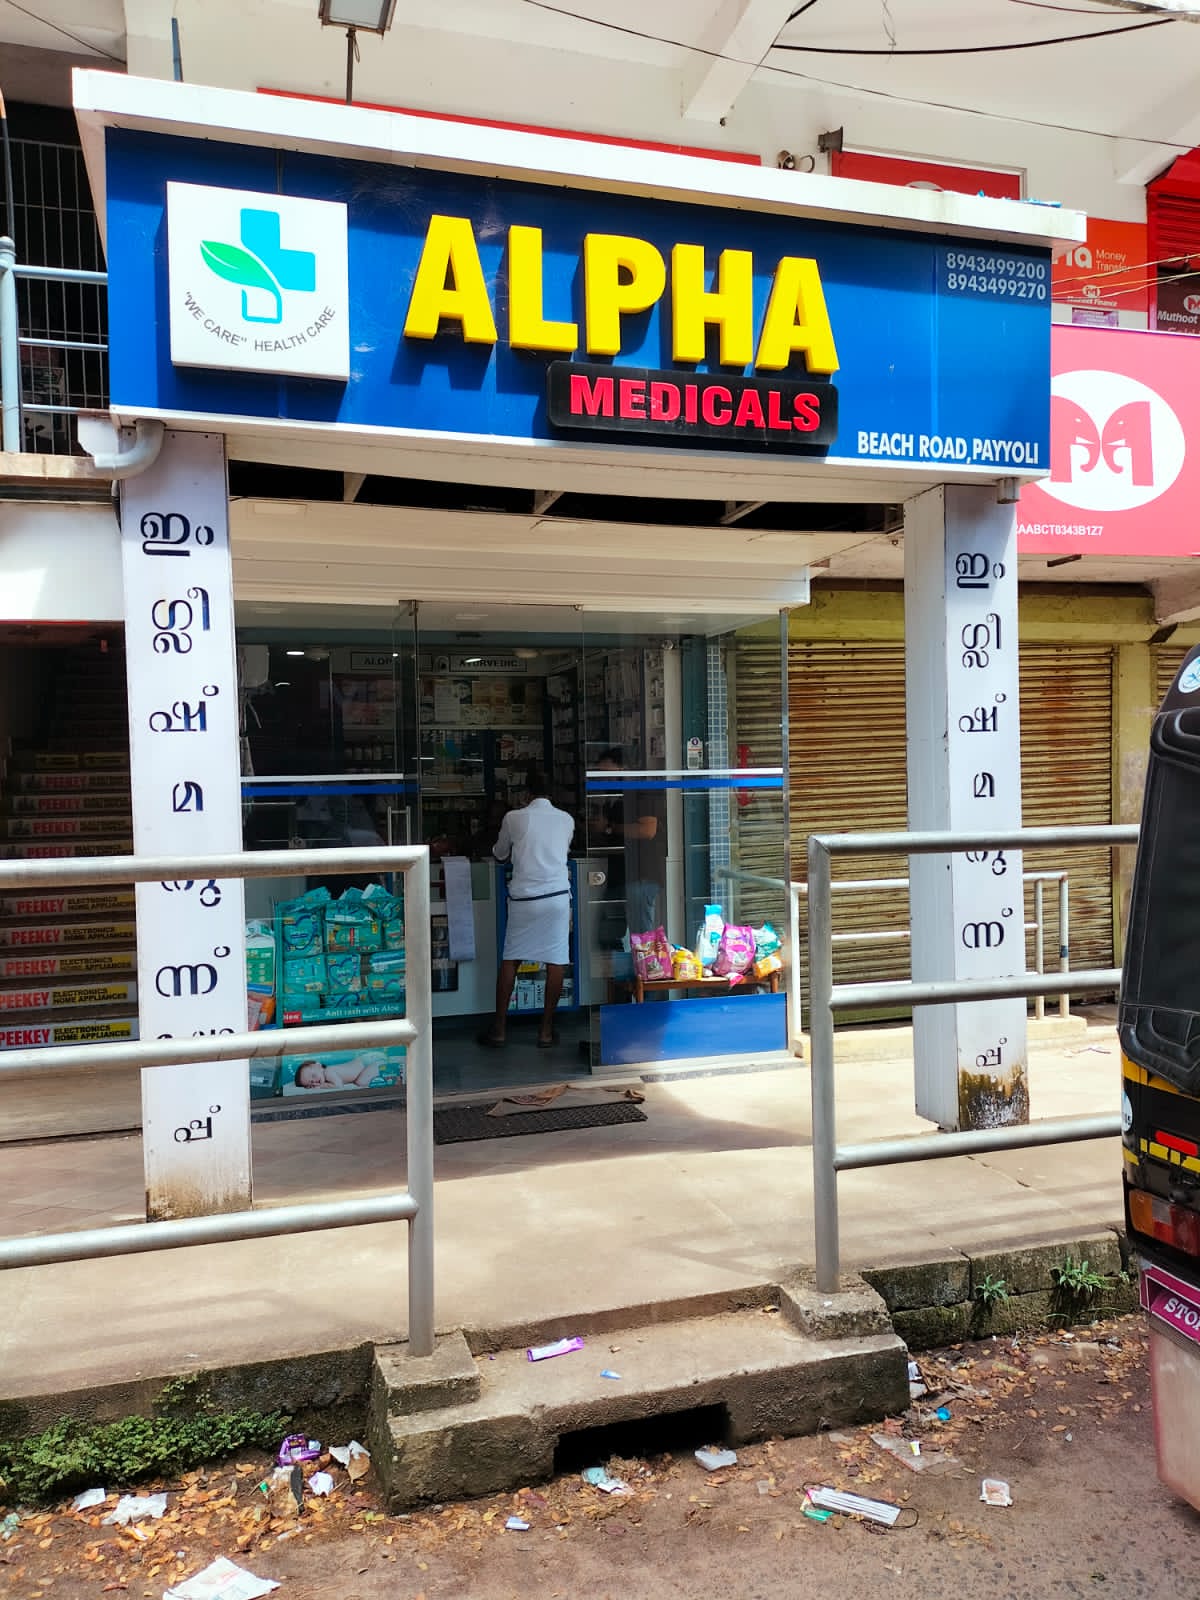 ALPHA Medicals